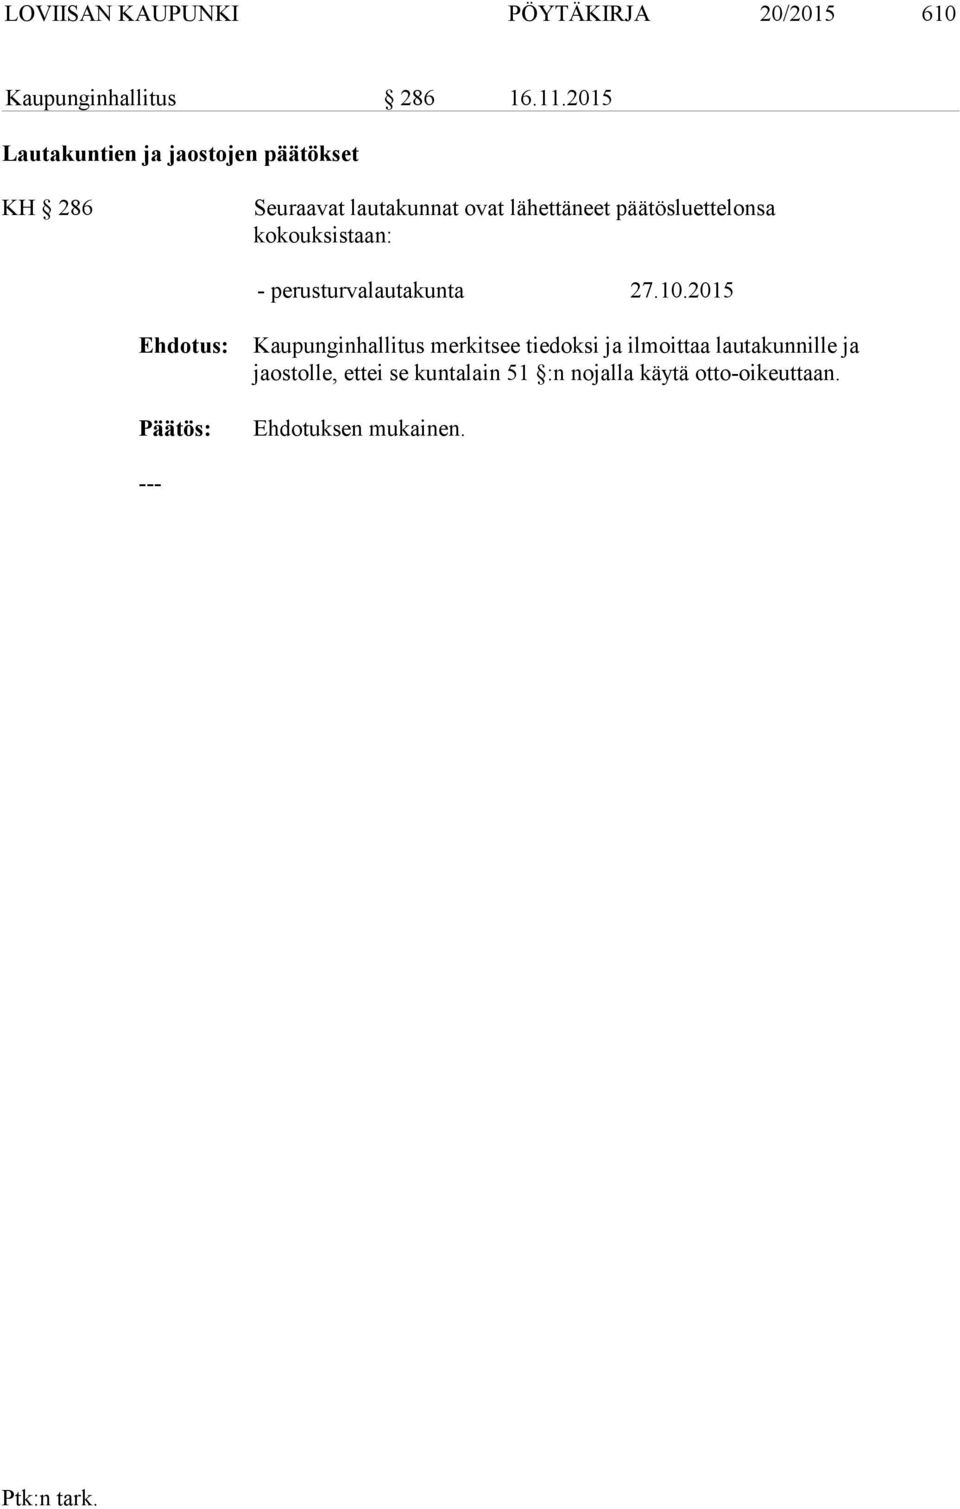 päätösluettelonsa kokouksistaan: - perusturvalautakunta 27.10.